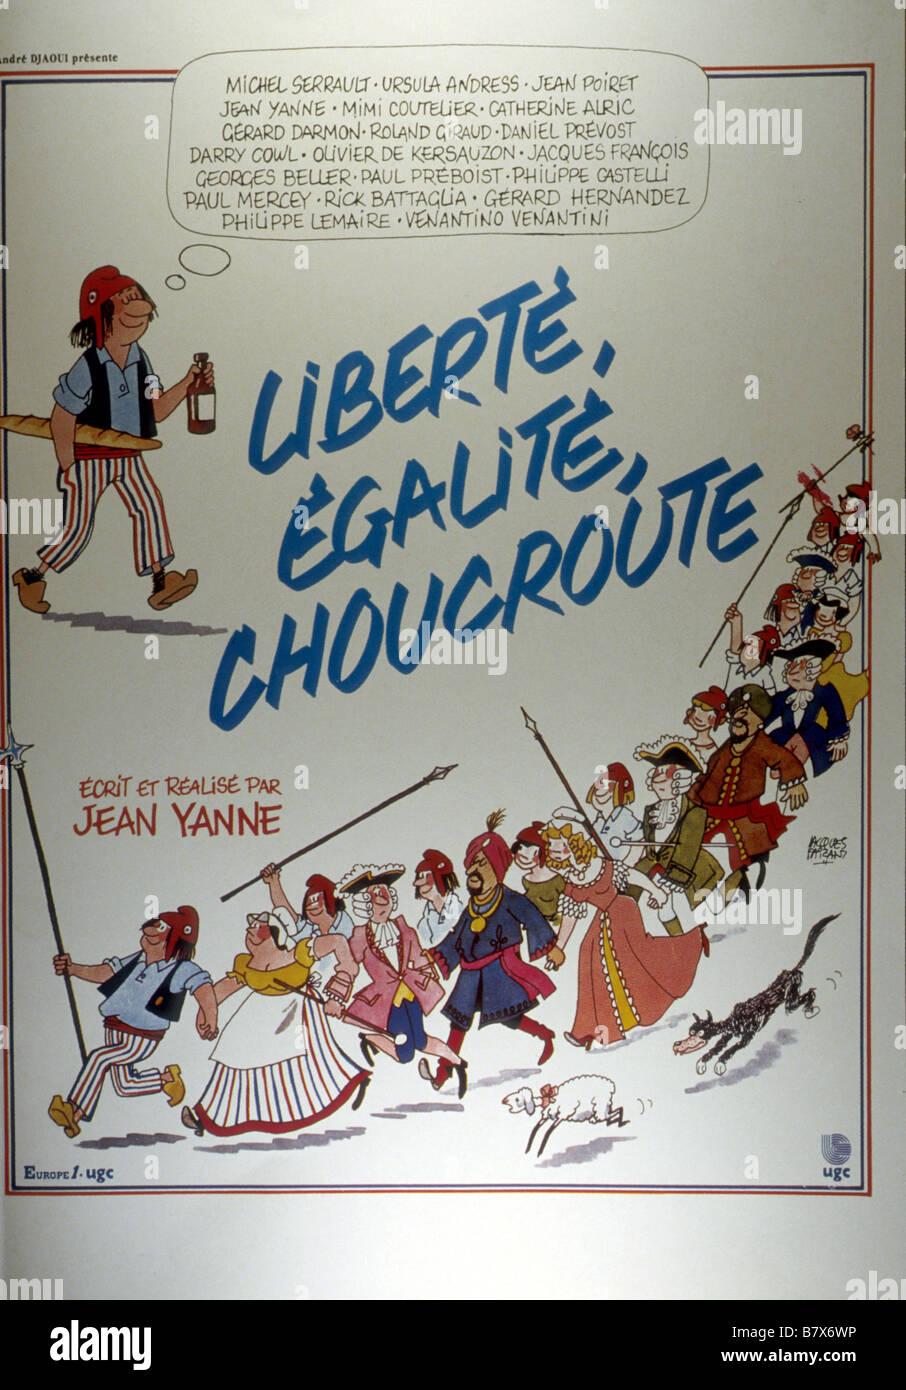 Liberté, égalité, choucroute  Year: 1985 - France Affiche , Poster  Director: Jean Yanne Stock Photo